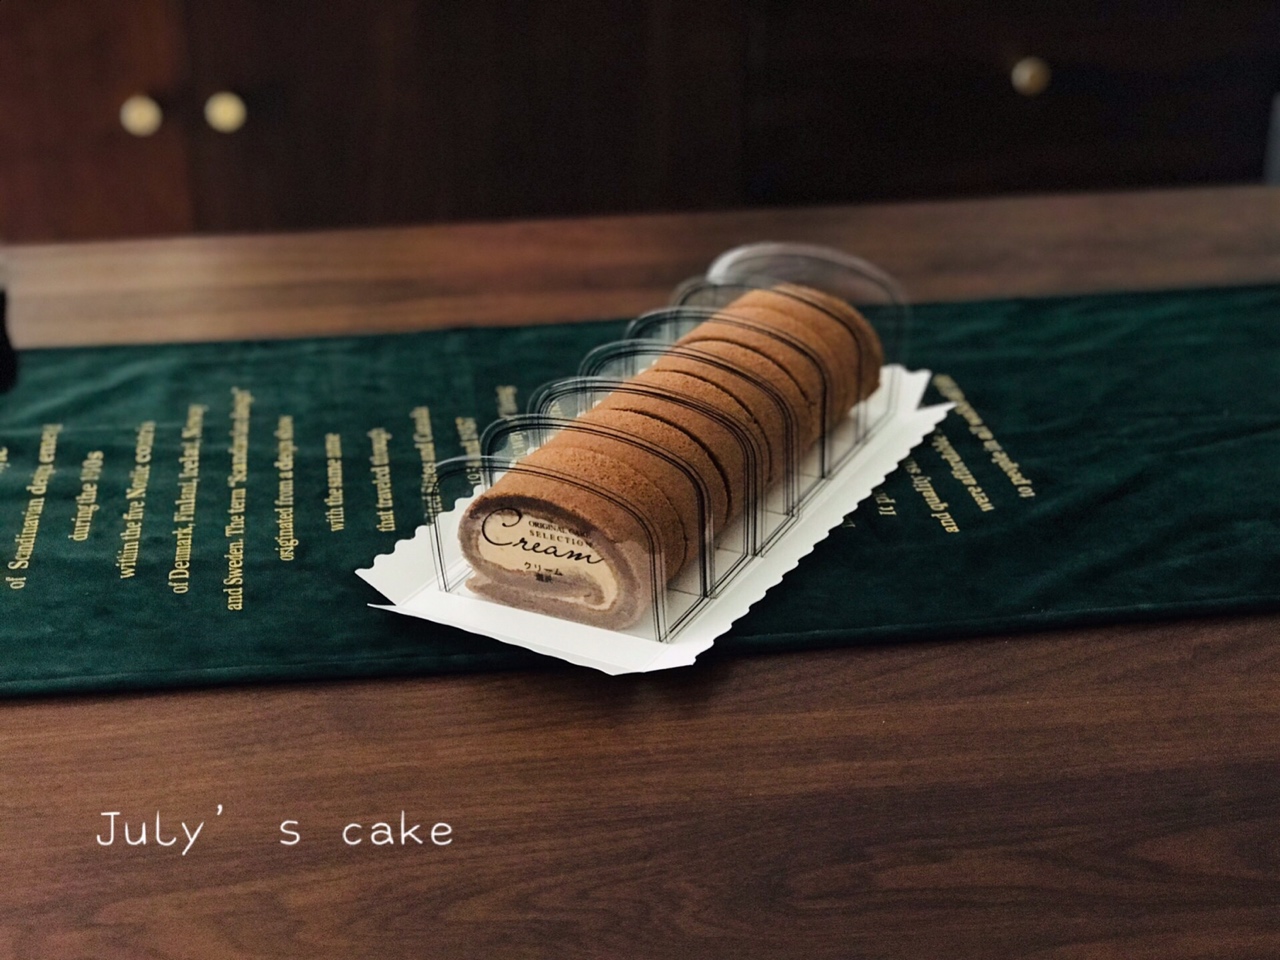 咸摩卡奶油卷/完美毛巾面技巧+回味无穷摩卡配方/烘焙视频蛋糕篇9「中卷」